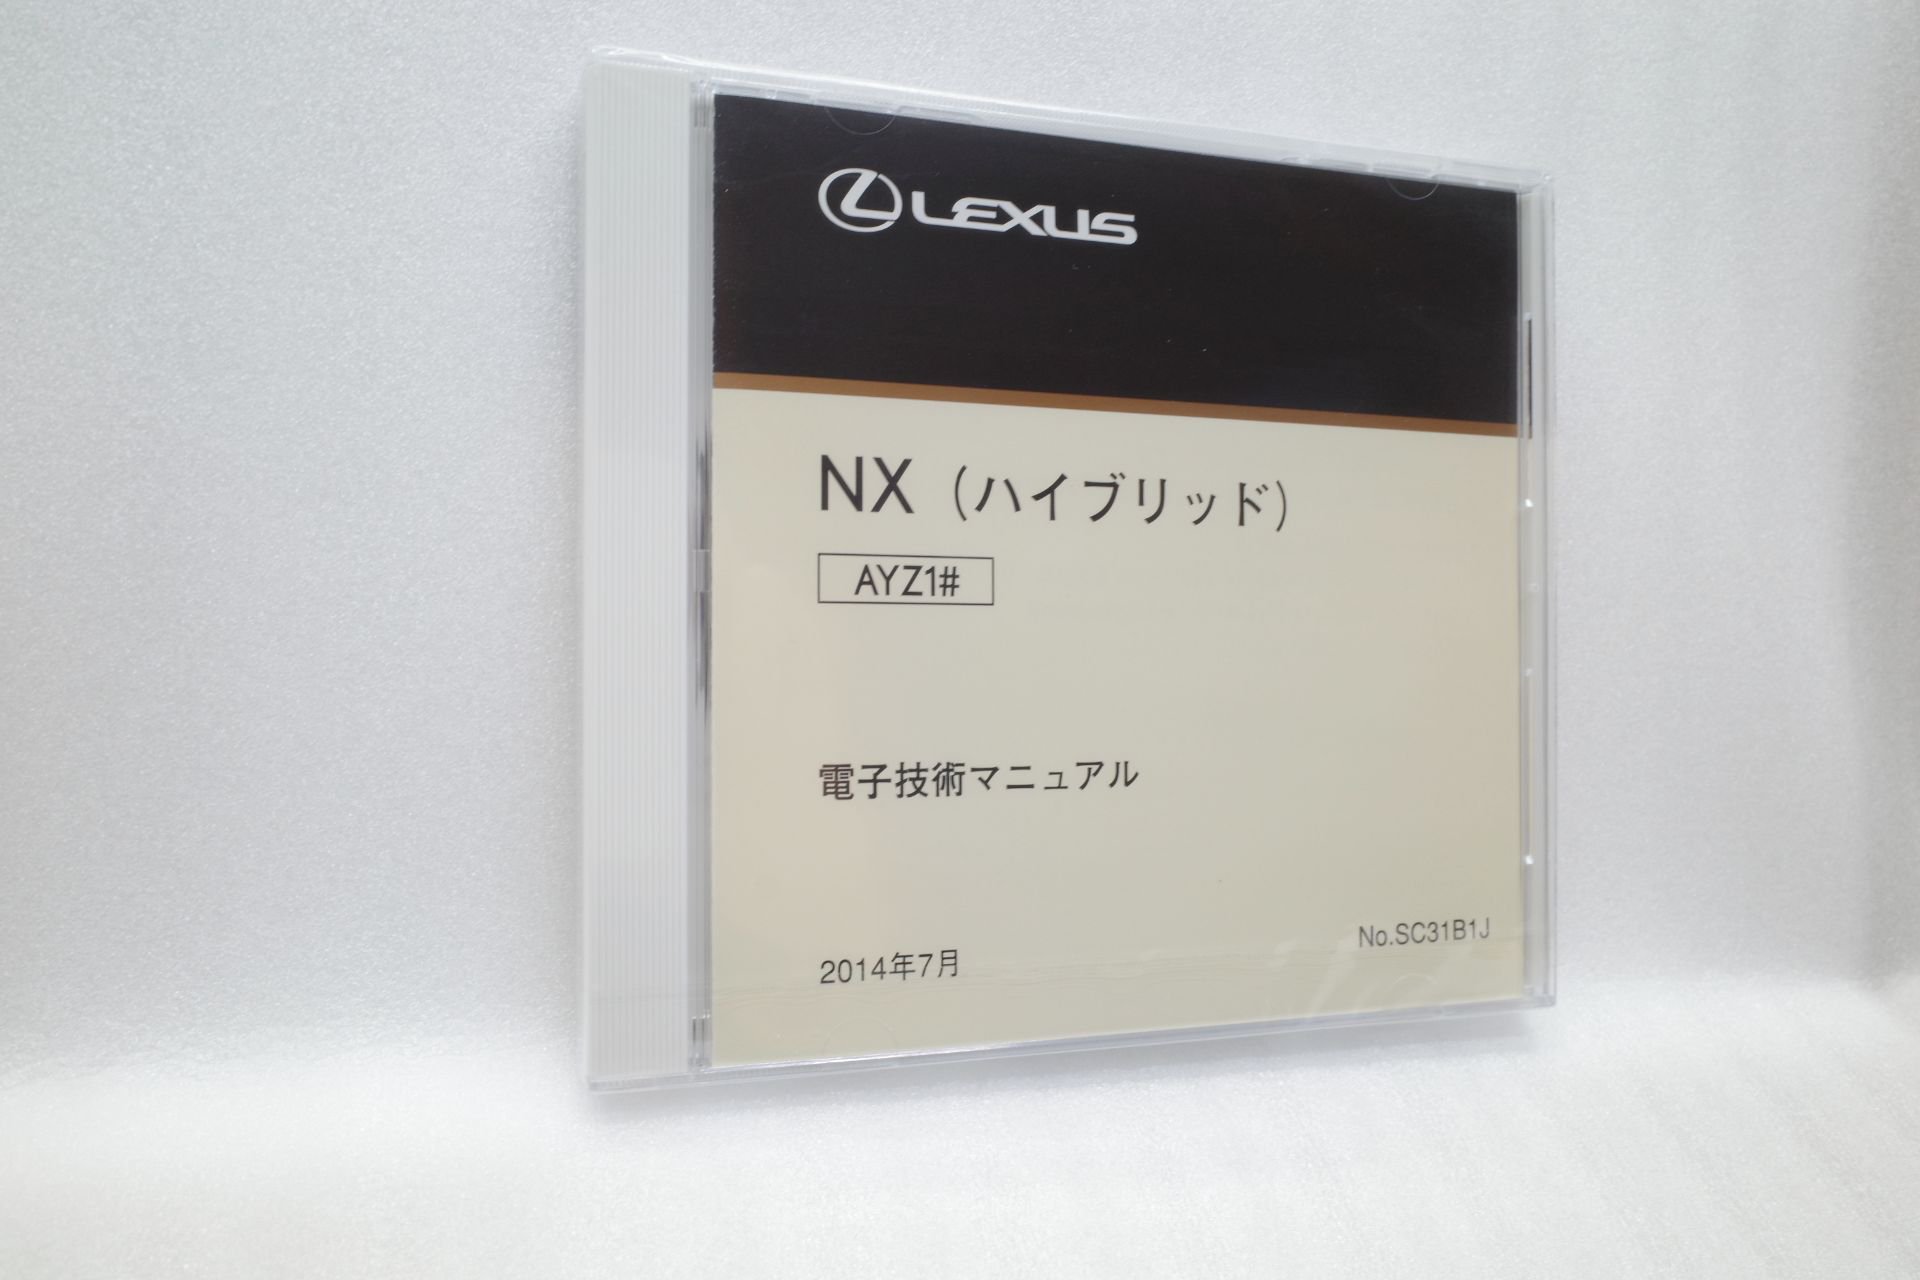 レクサス NX ハイブリッド - AYZ1# 系 (LEXUS) SC31B1J 電子技術